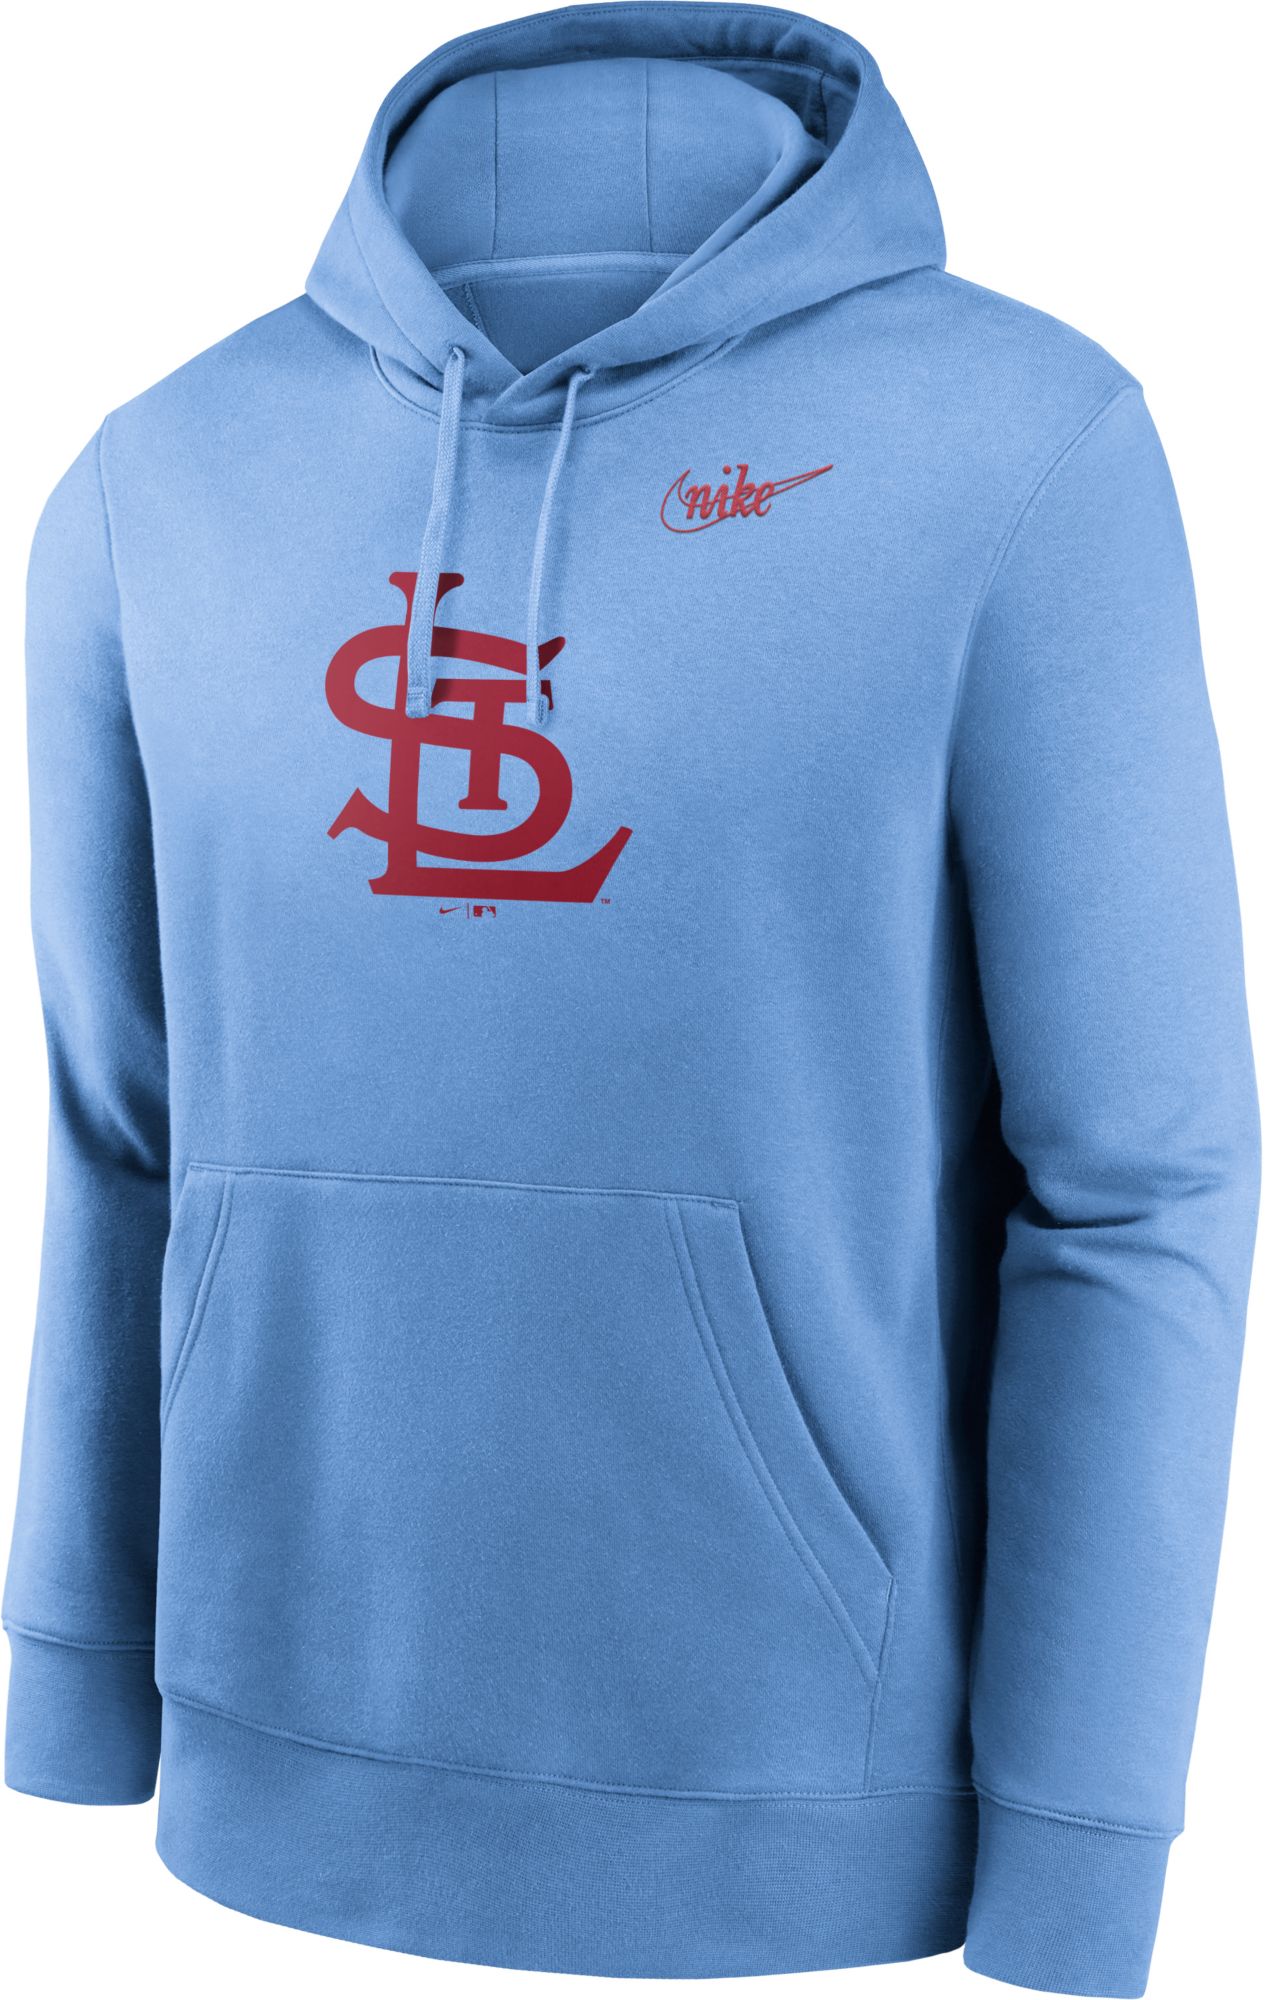 Nike St. Louis Cardinals Women's Official Replica Jersey - Blue